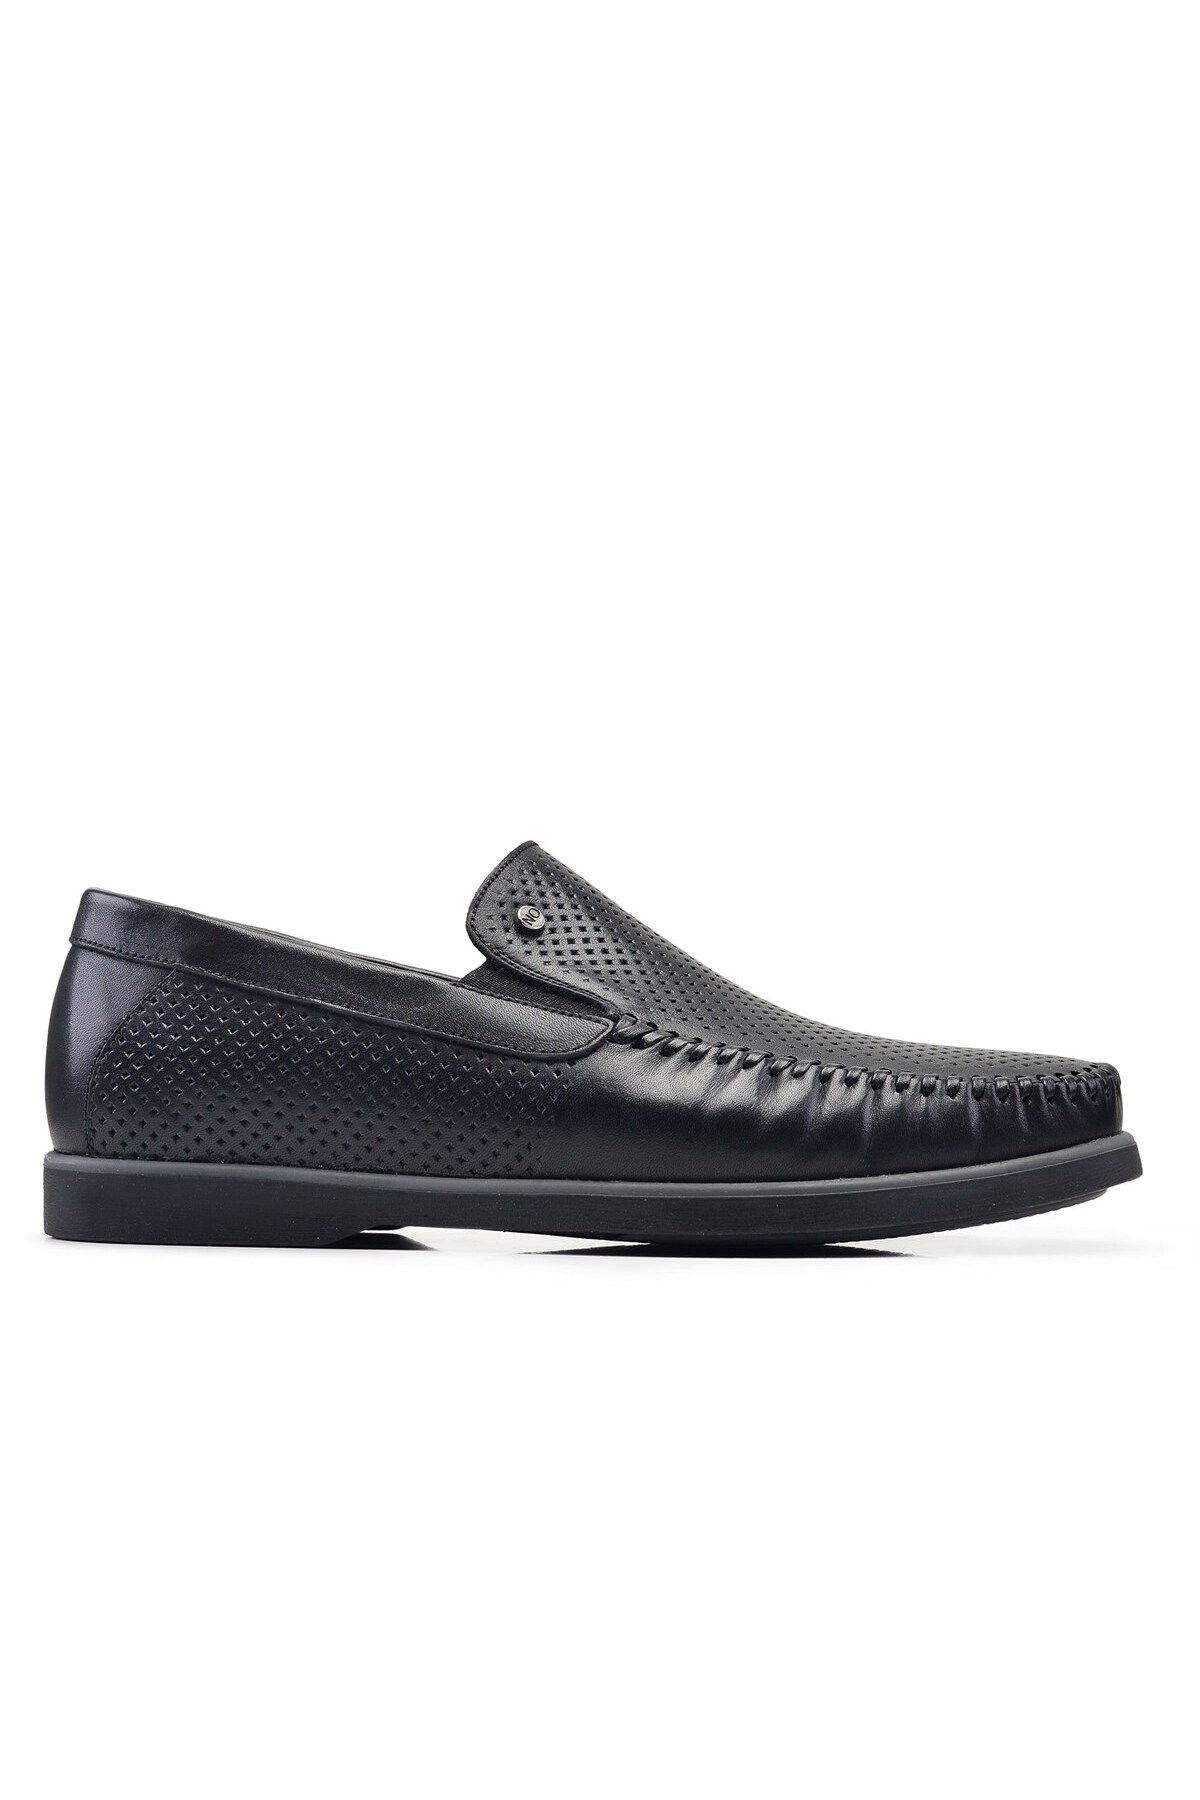 Nevzat Onay Siyah Yazlık Bağcıksız Erkek Ayakkabı -12659-